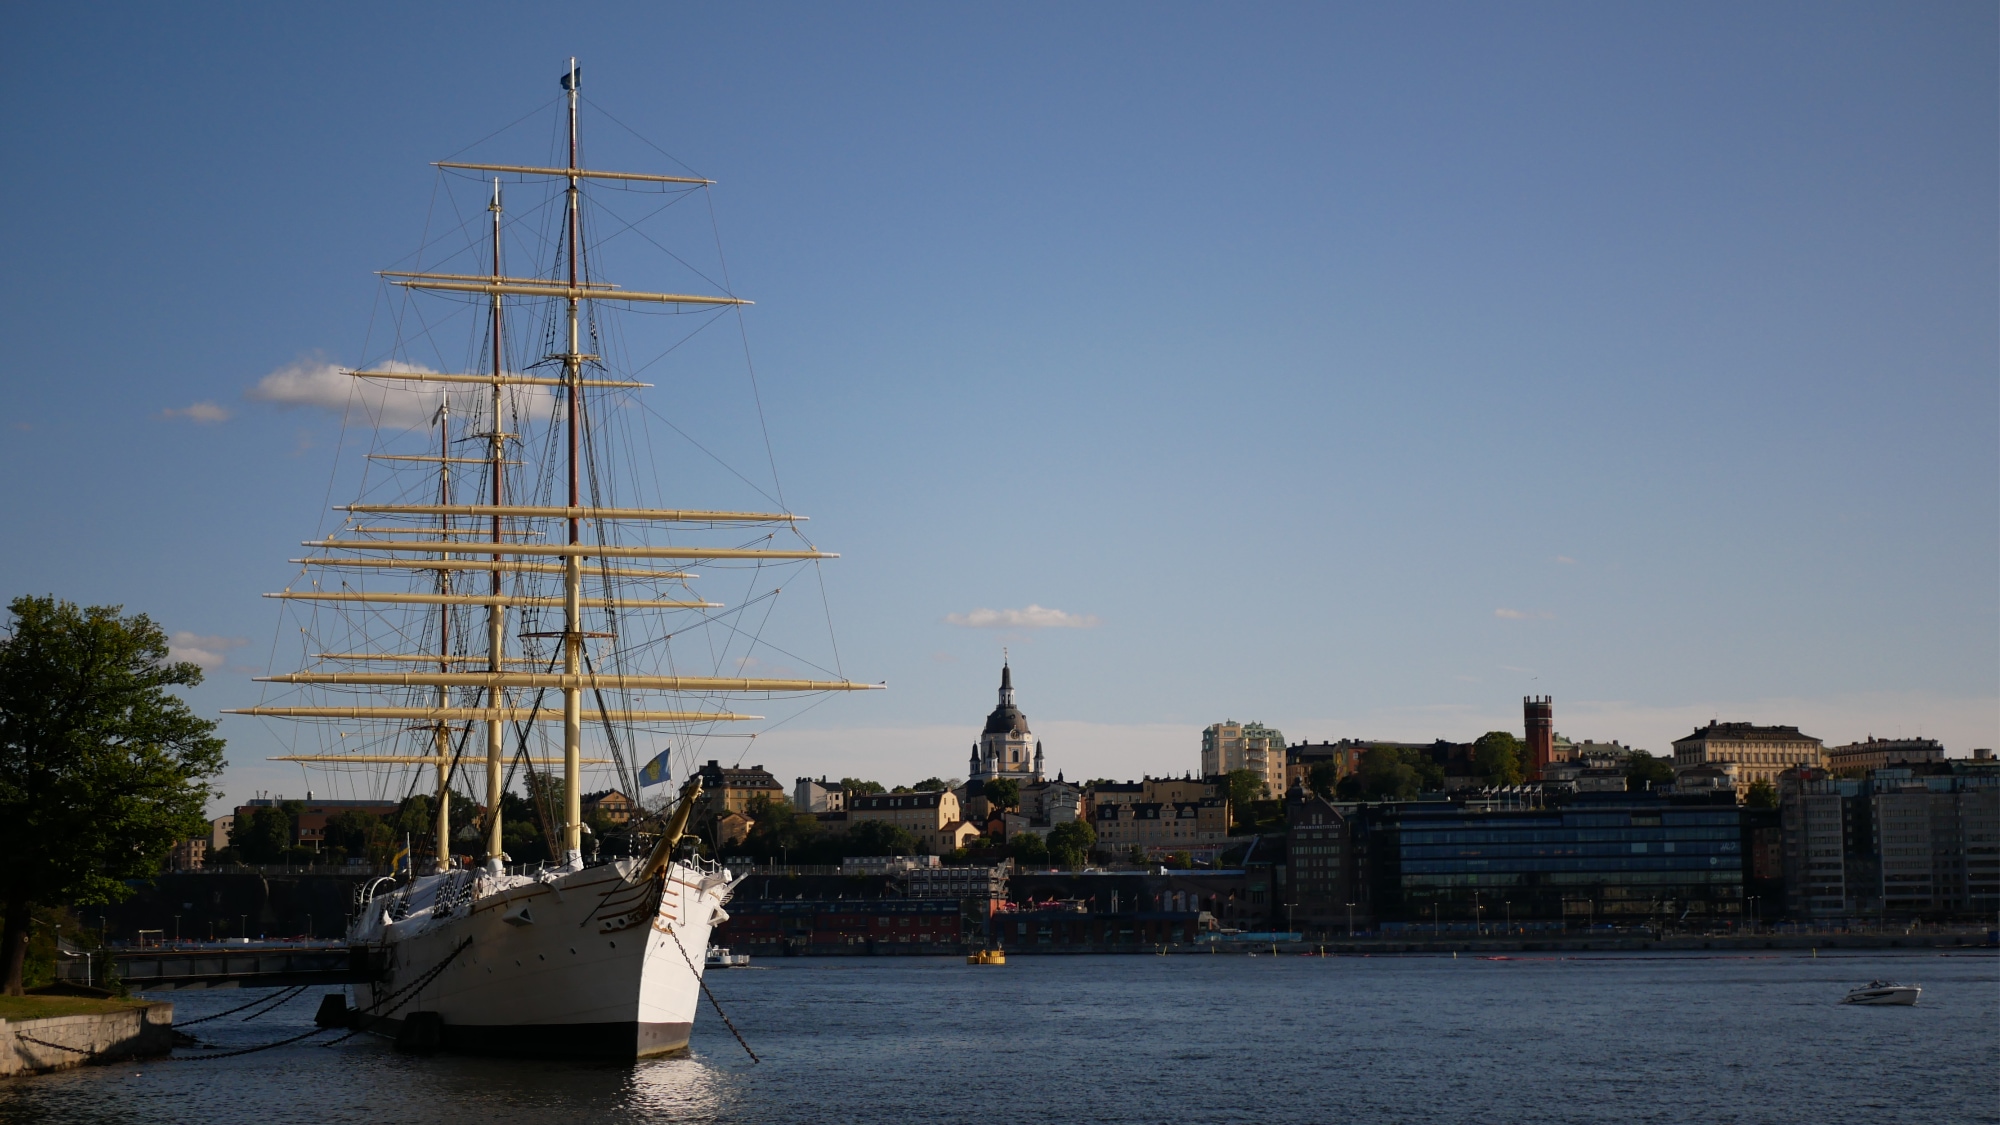 A photo taken of the ship af Chapman in Skeppsholmen in Stockholm.